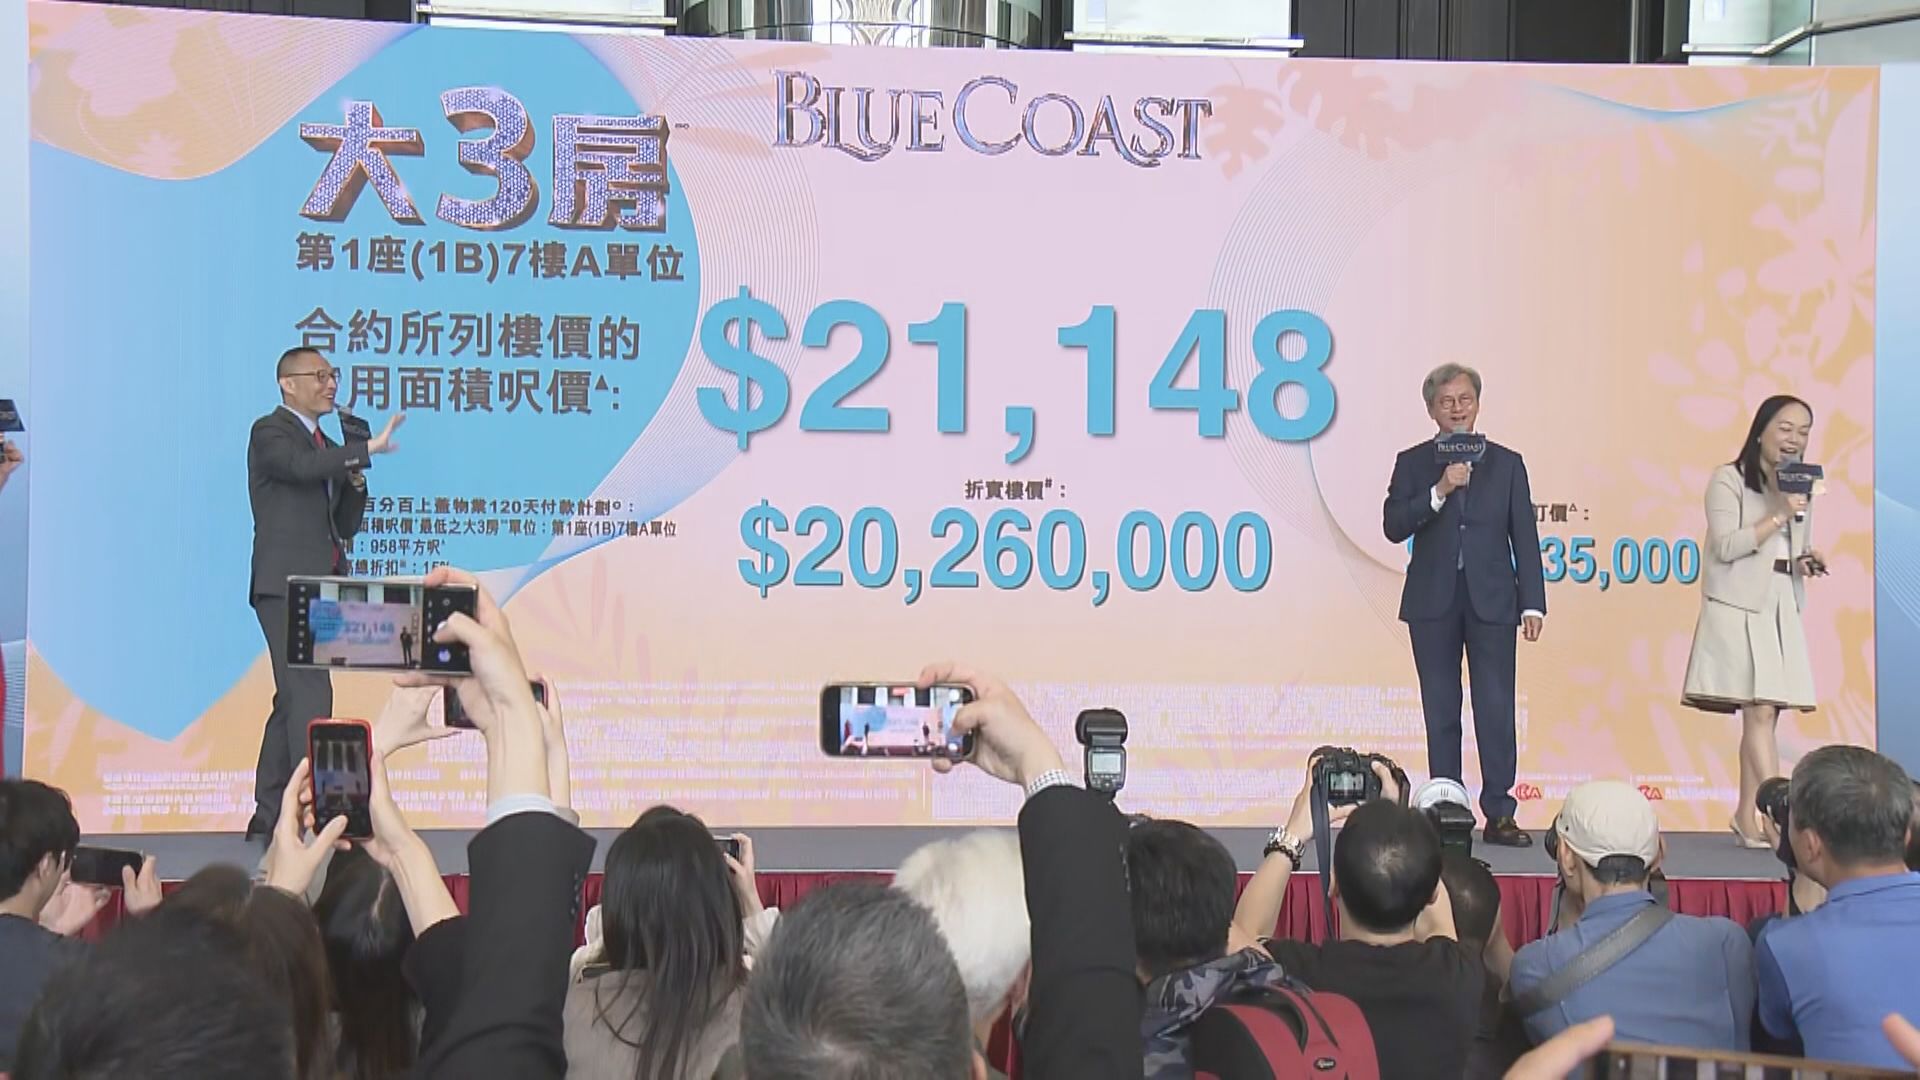 【首批138伙】黃竹坑站BLUE COAST折實均價近2.2萬